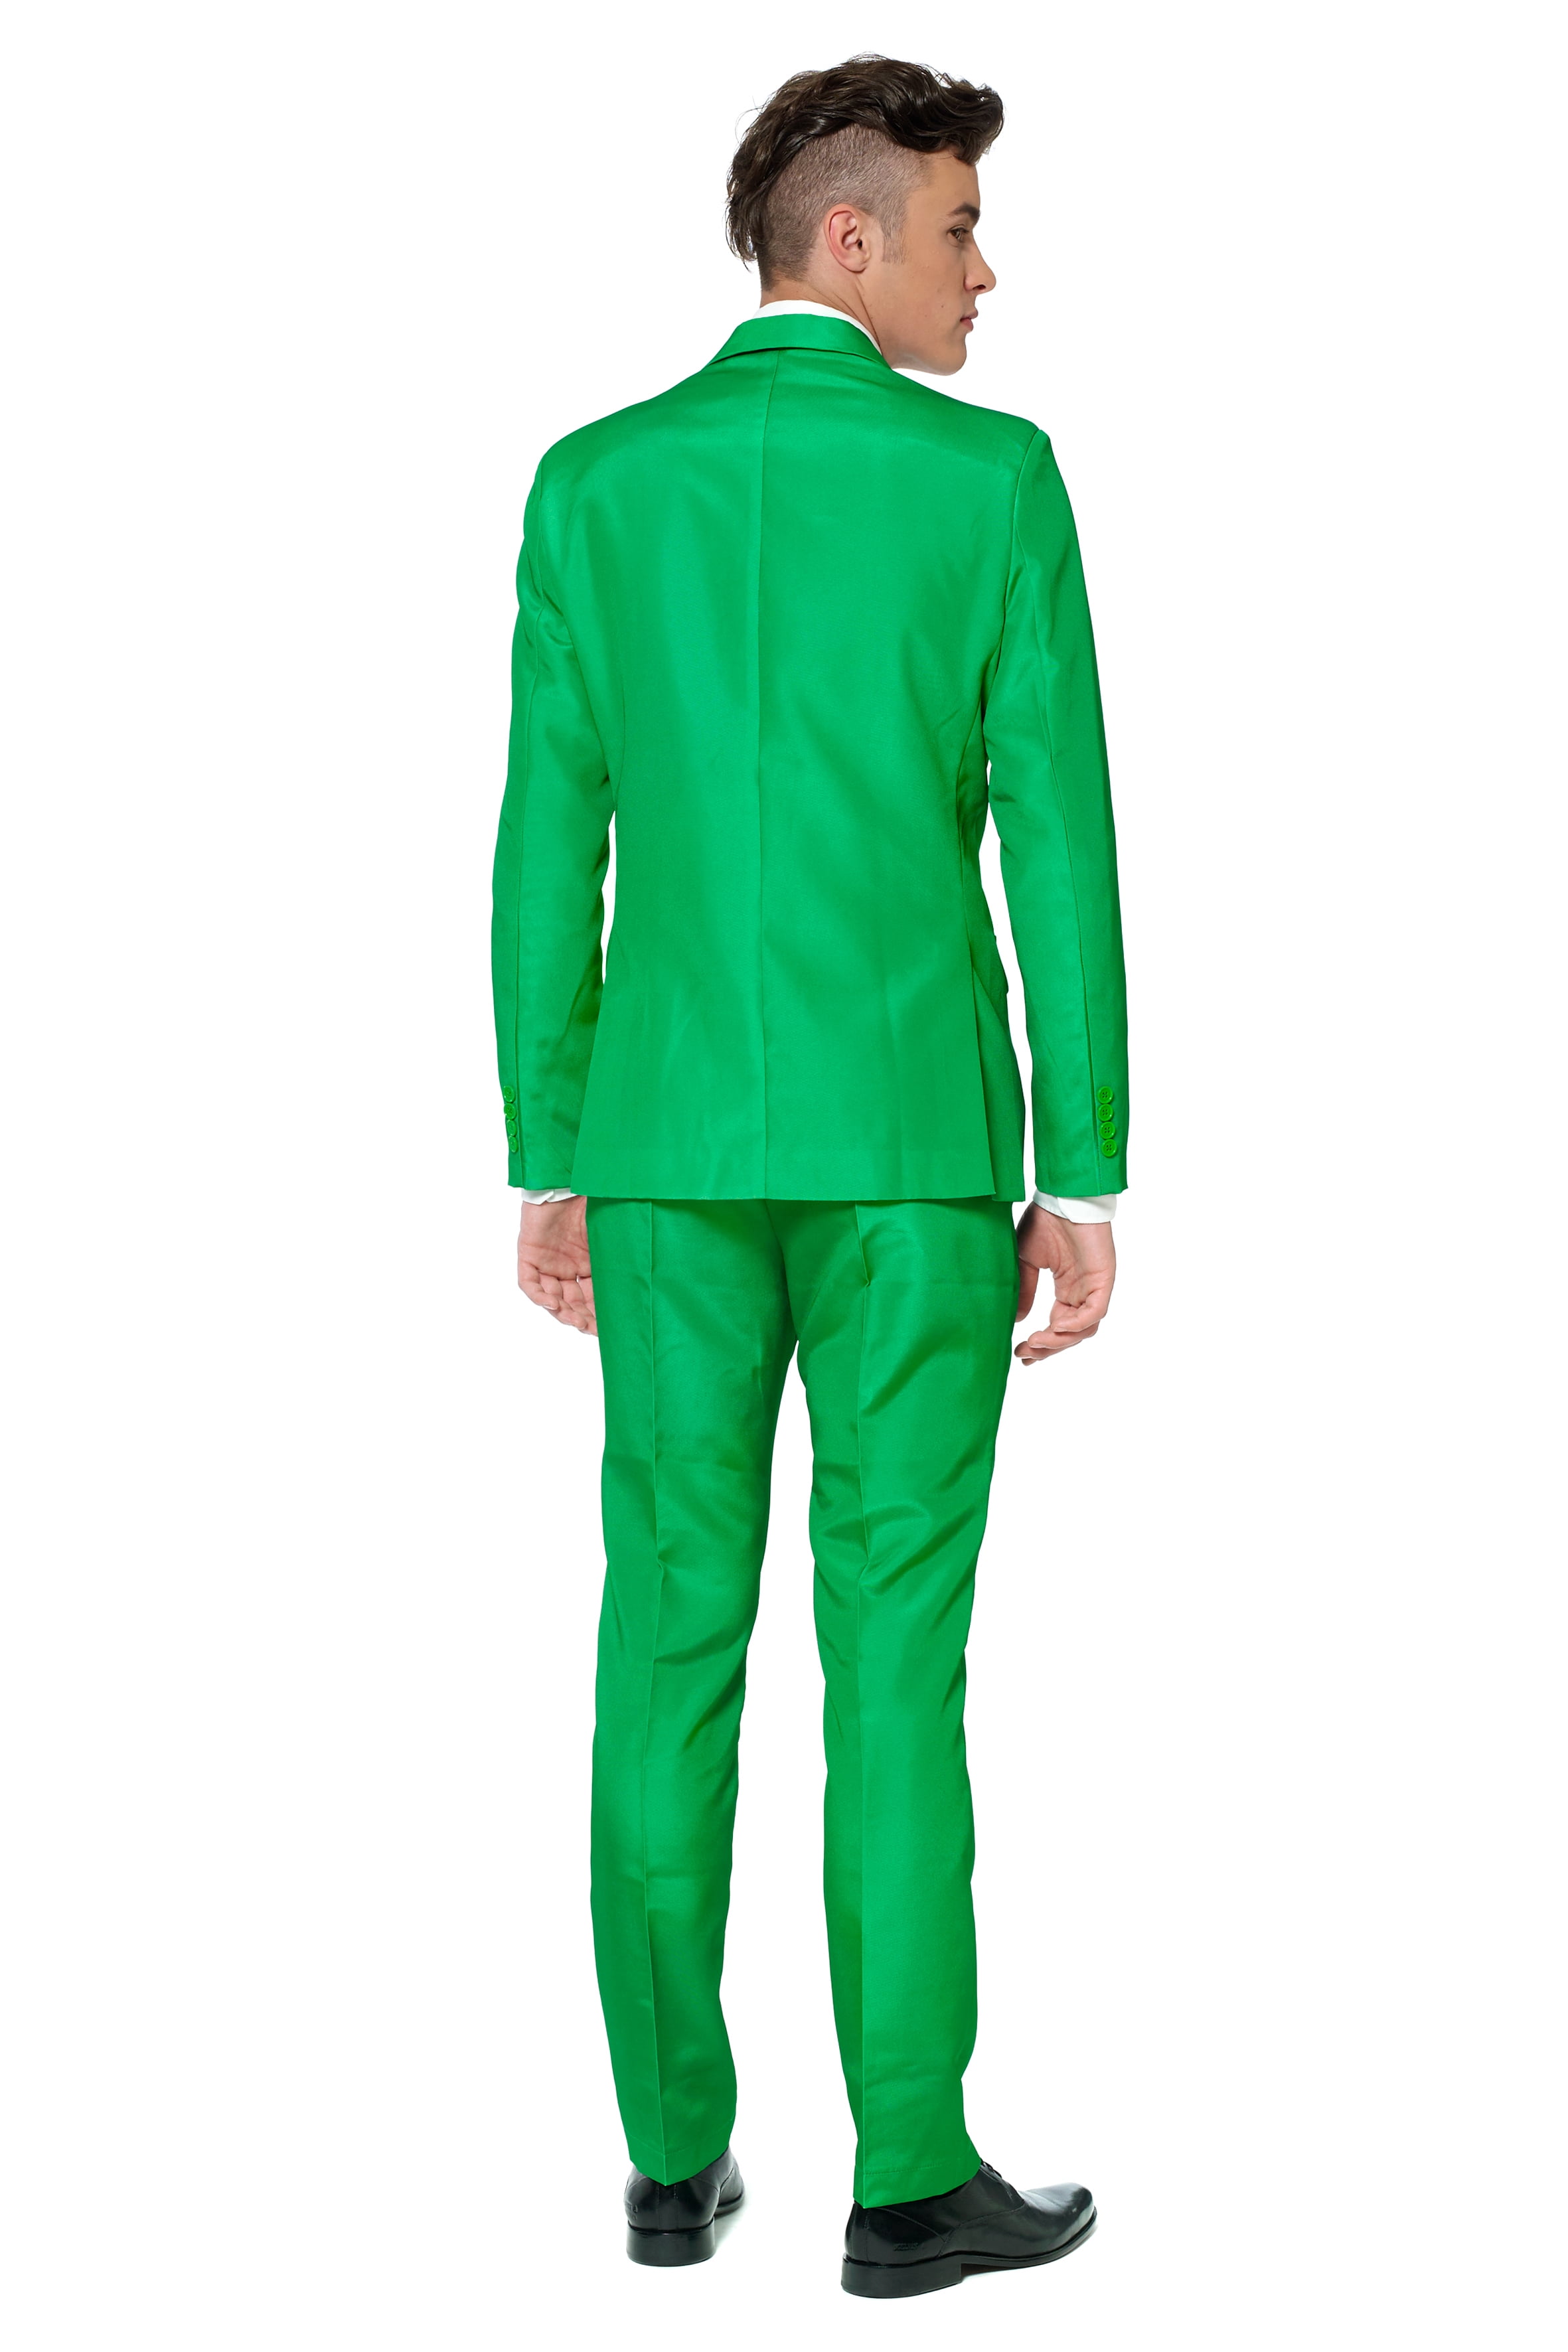 Aggregate more than 210 green colour suit men